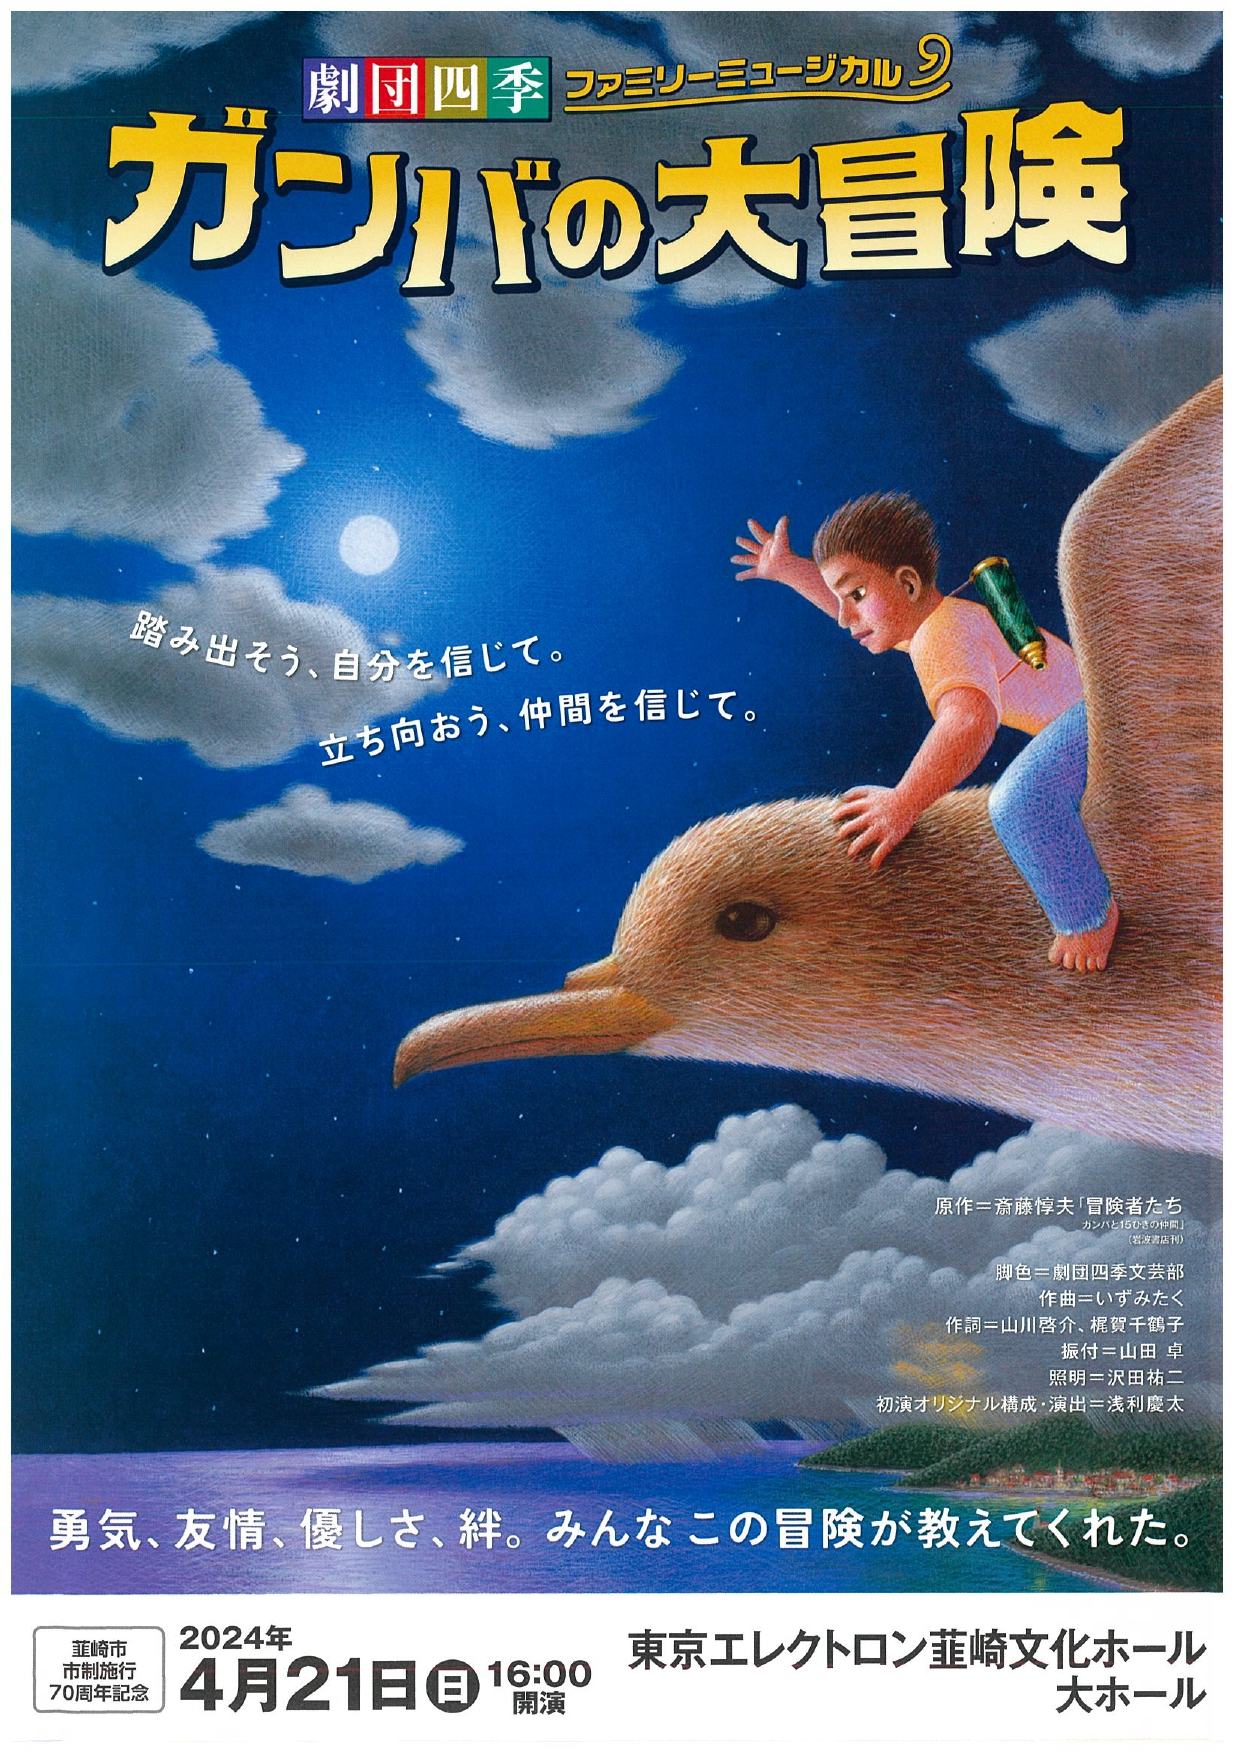 韮崎市市制施行70周年記念 劇団四季ファミリーミュージカル「ガンバの大冒険」